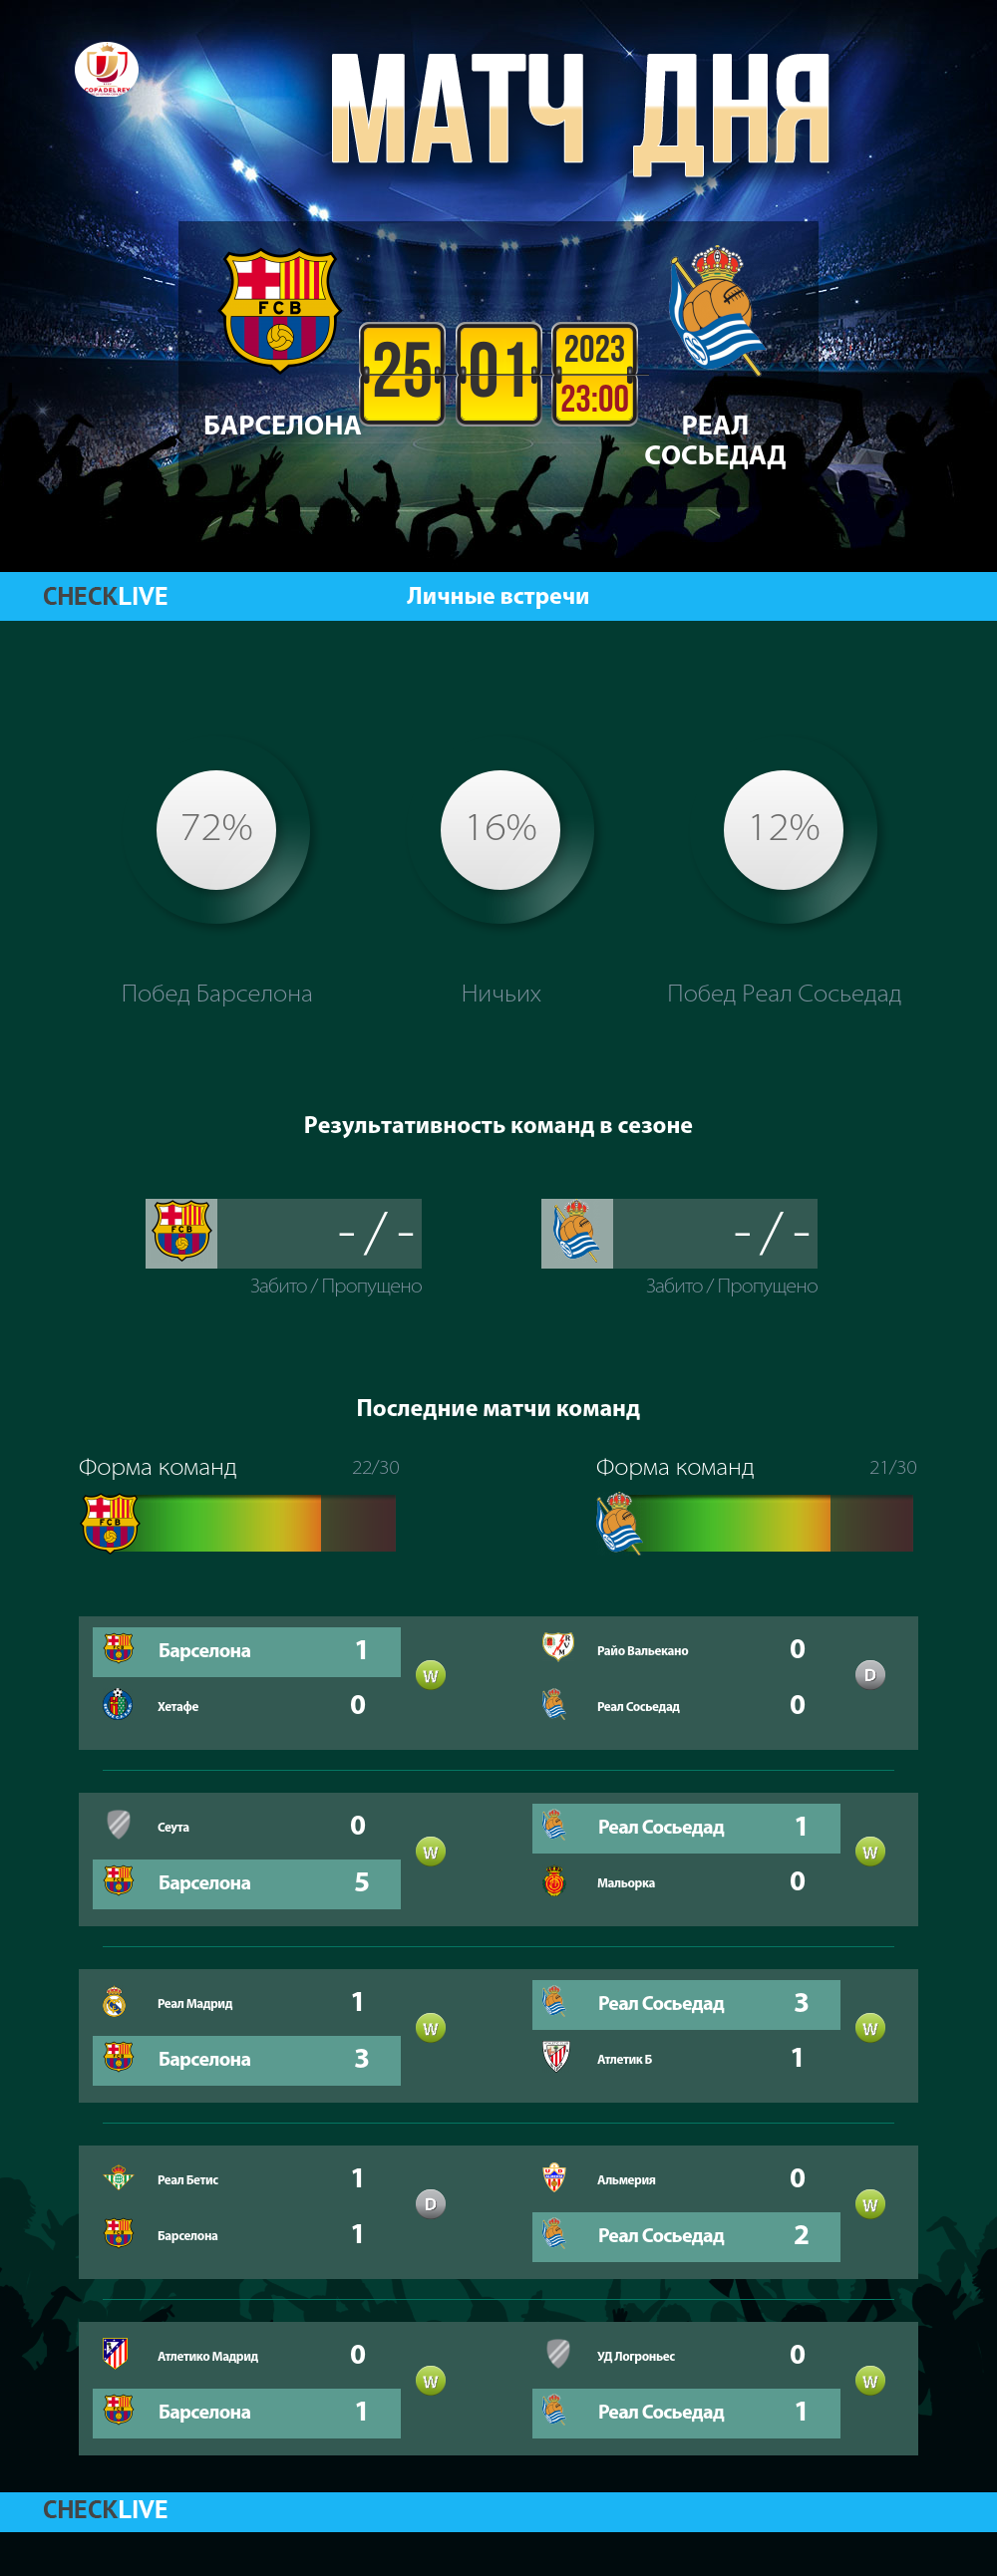 Инфографика Барселона и Реал Сосьедад матч дня 25.01.2023